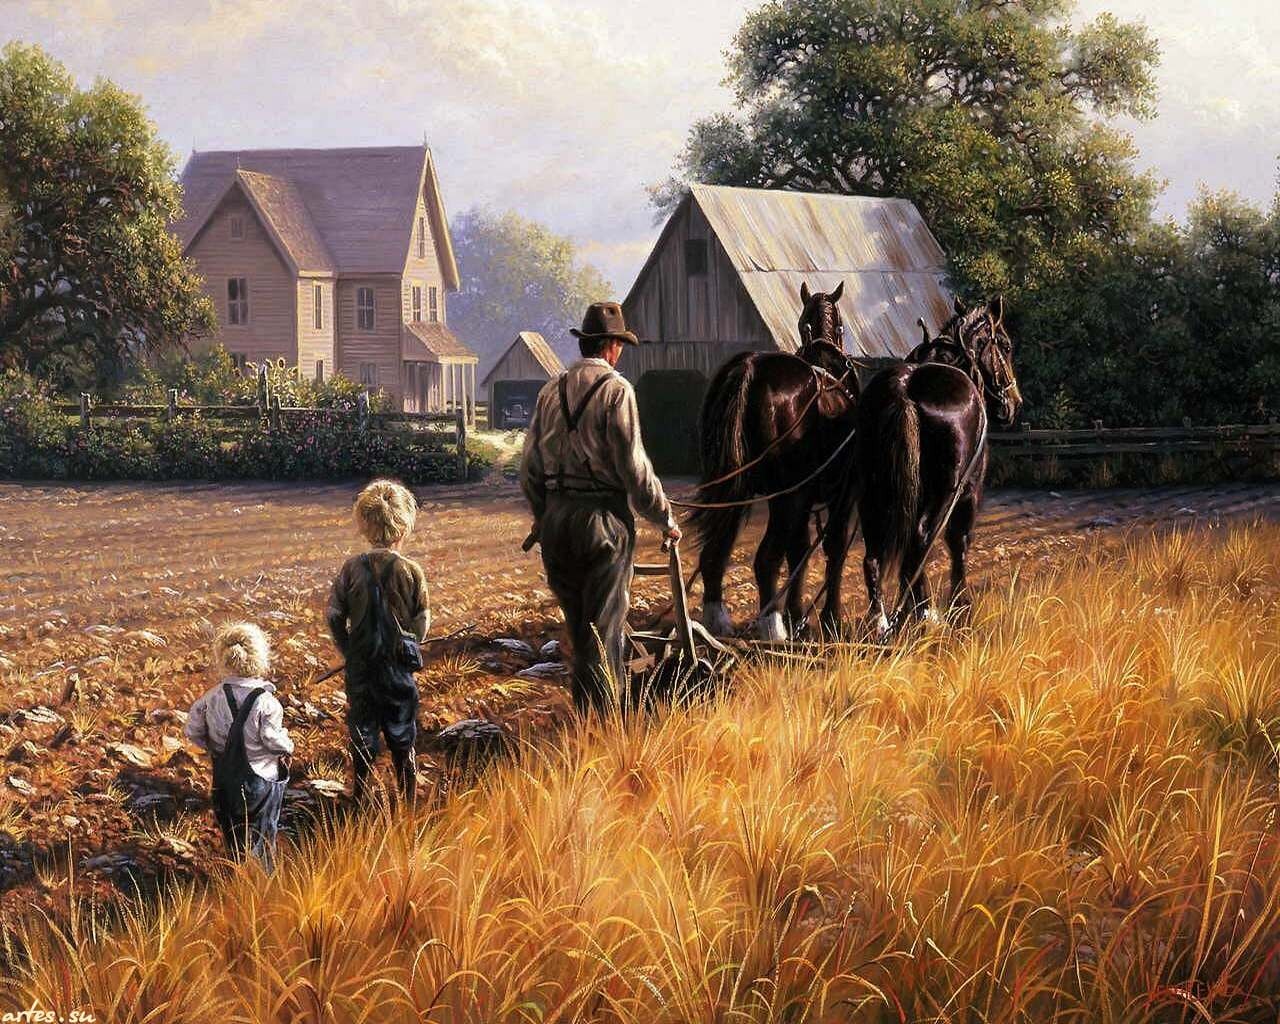 Жизнь сельской деревни. Художник Mark Keathley деревенская жизнь.